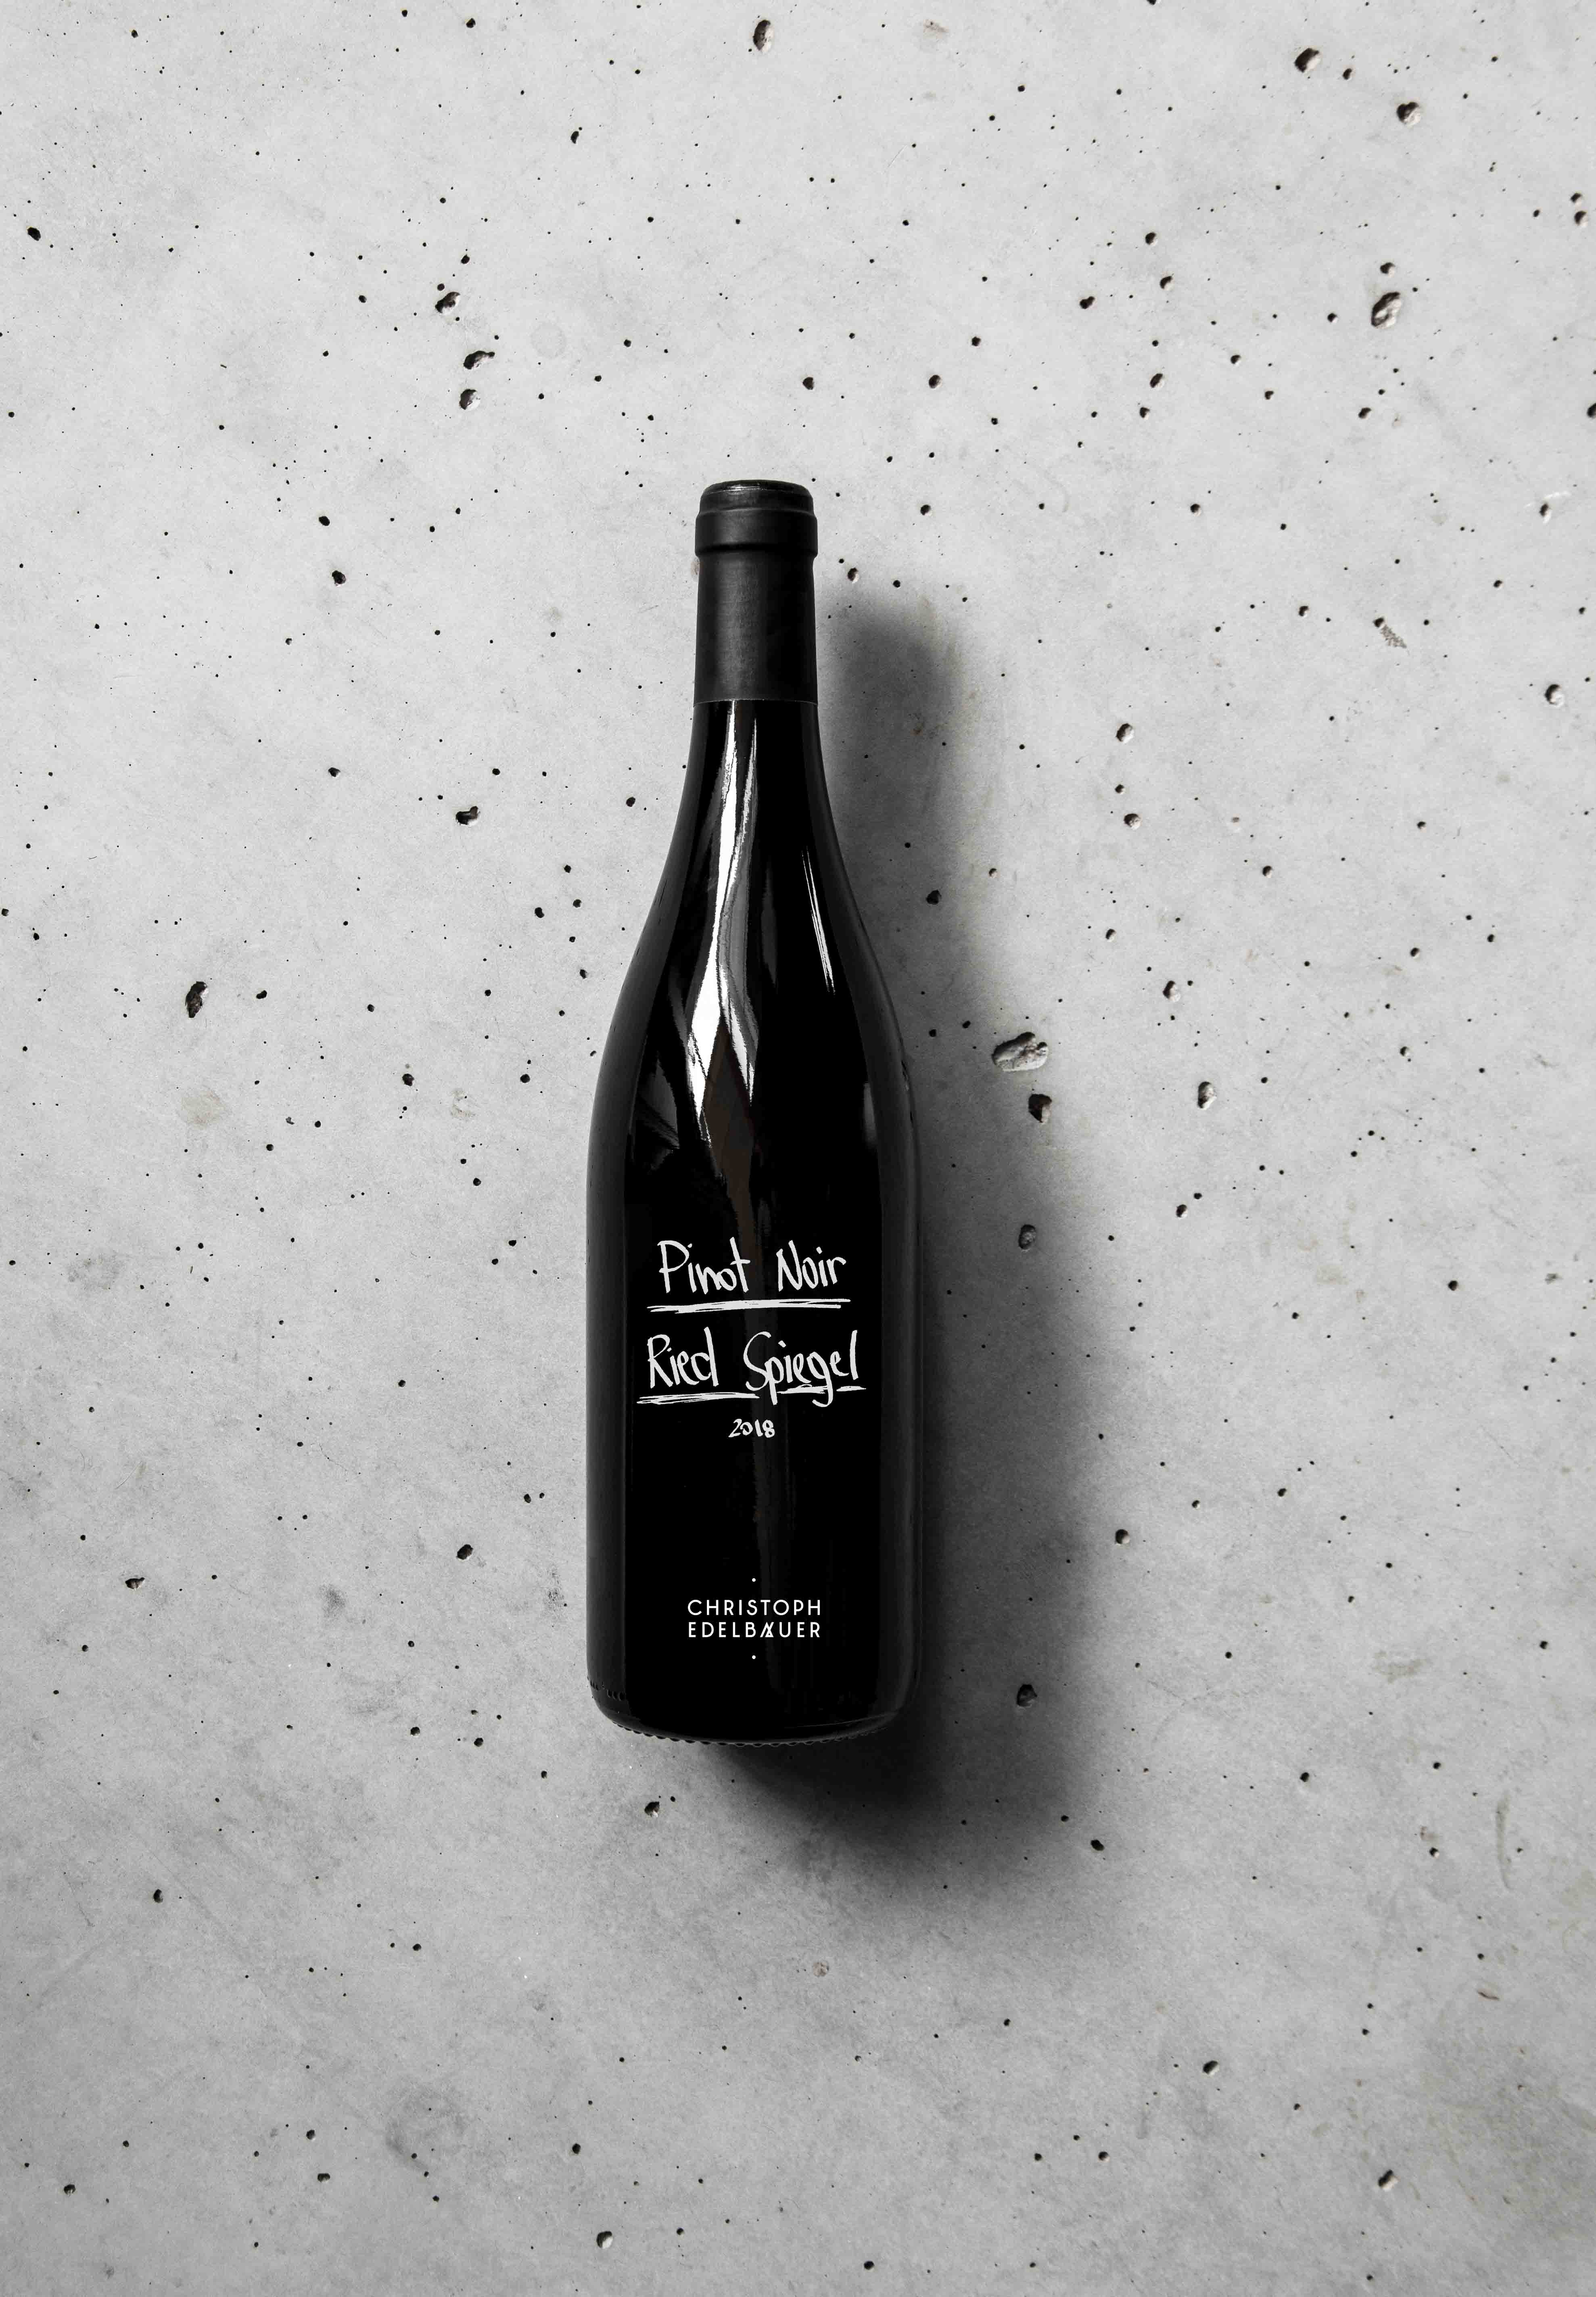 Pinot Noir Ried Spiegel 2018